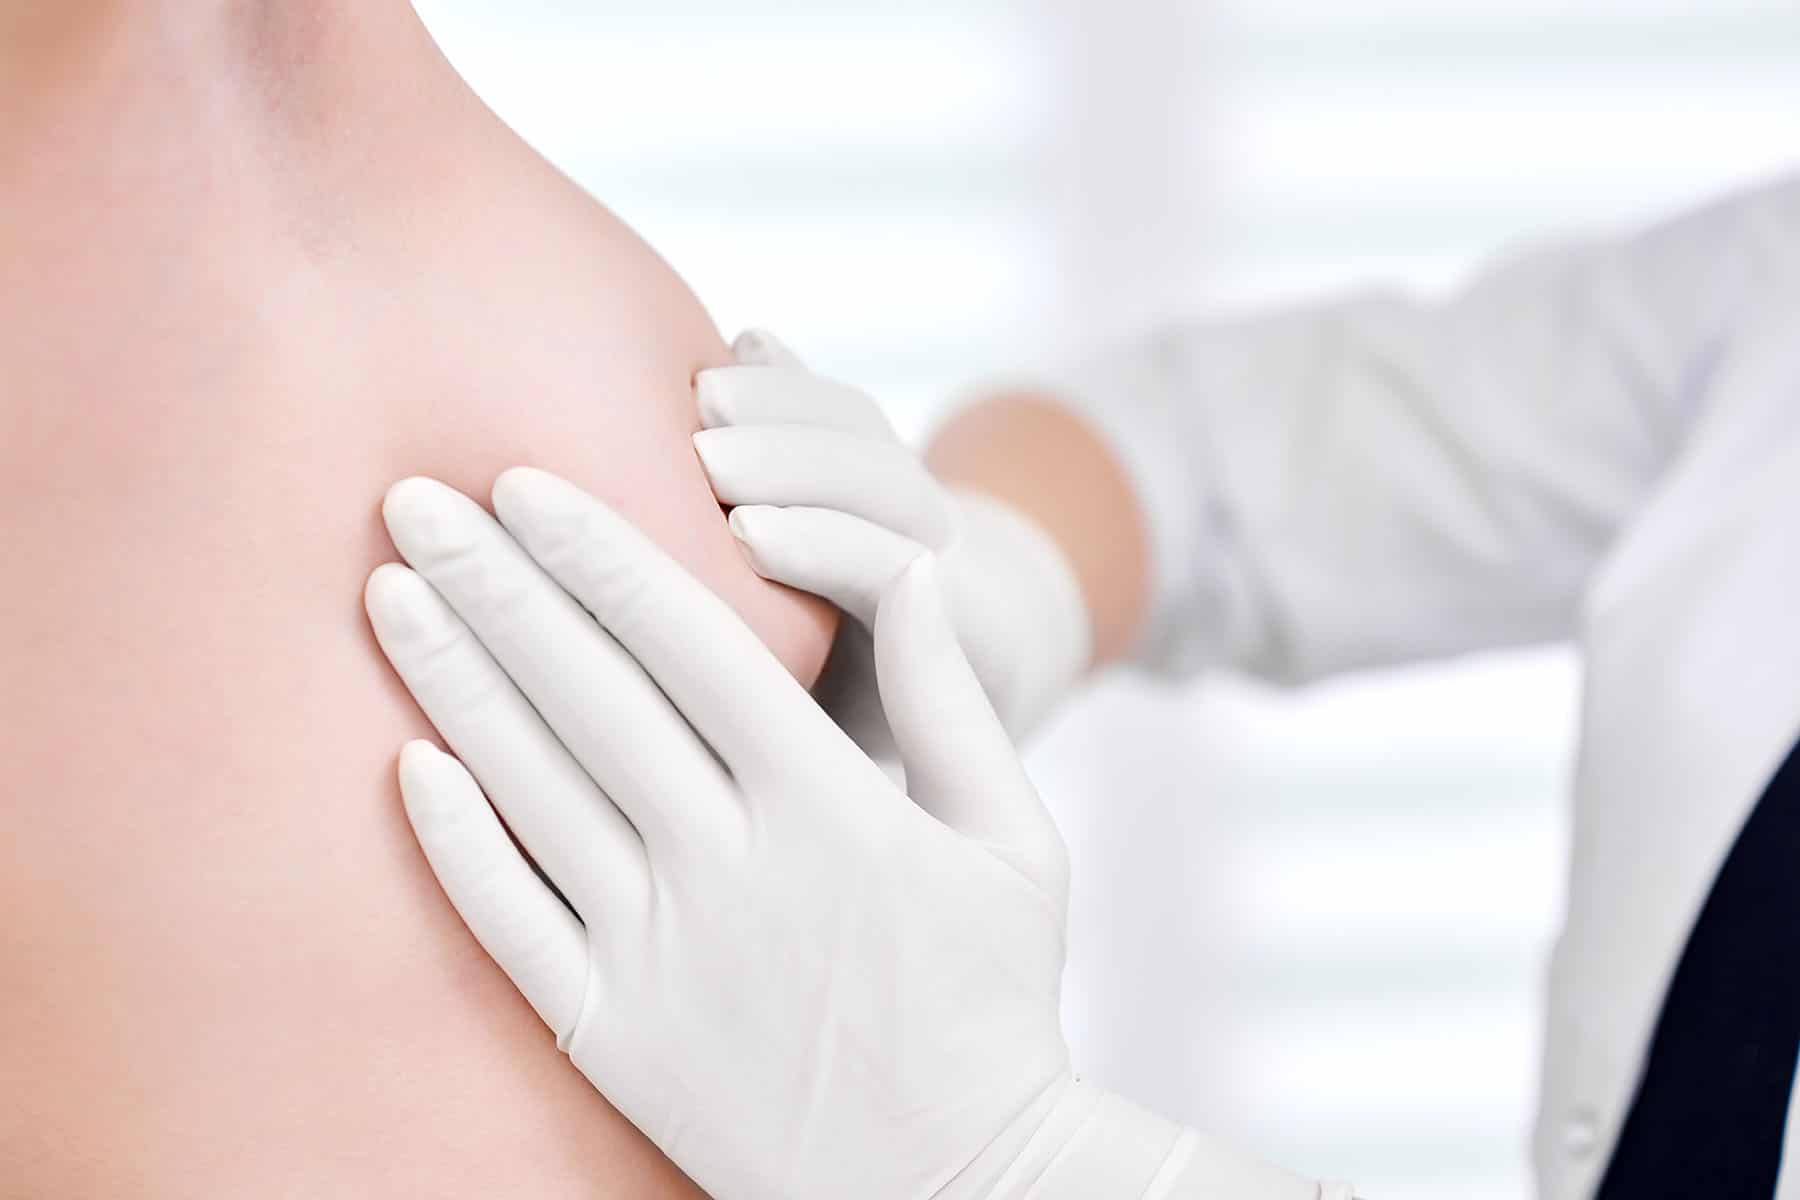 Breast examination